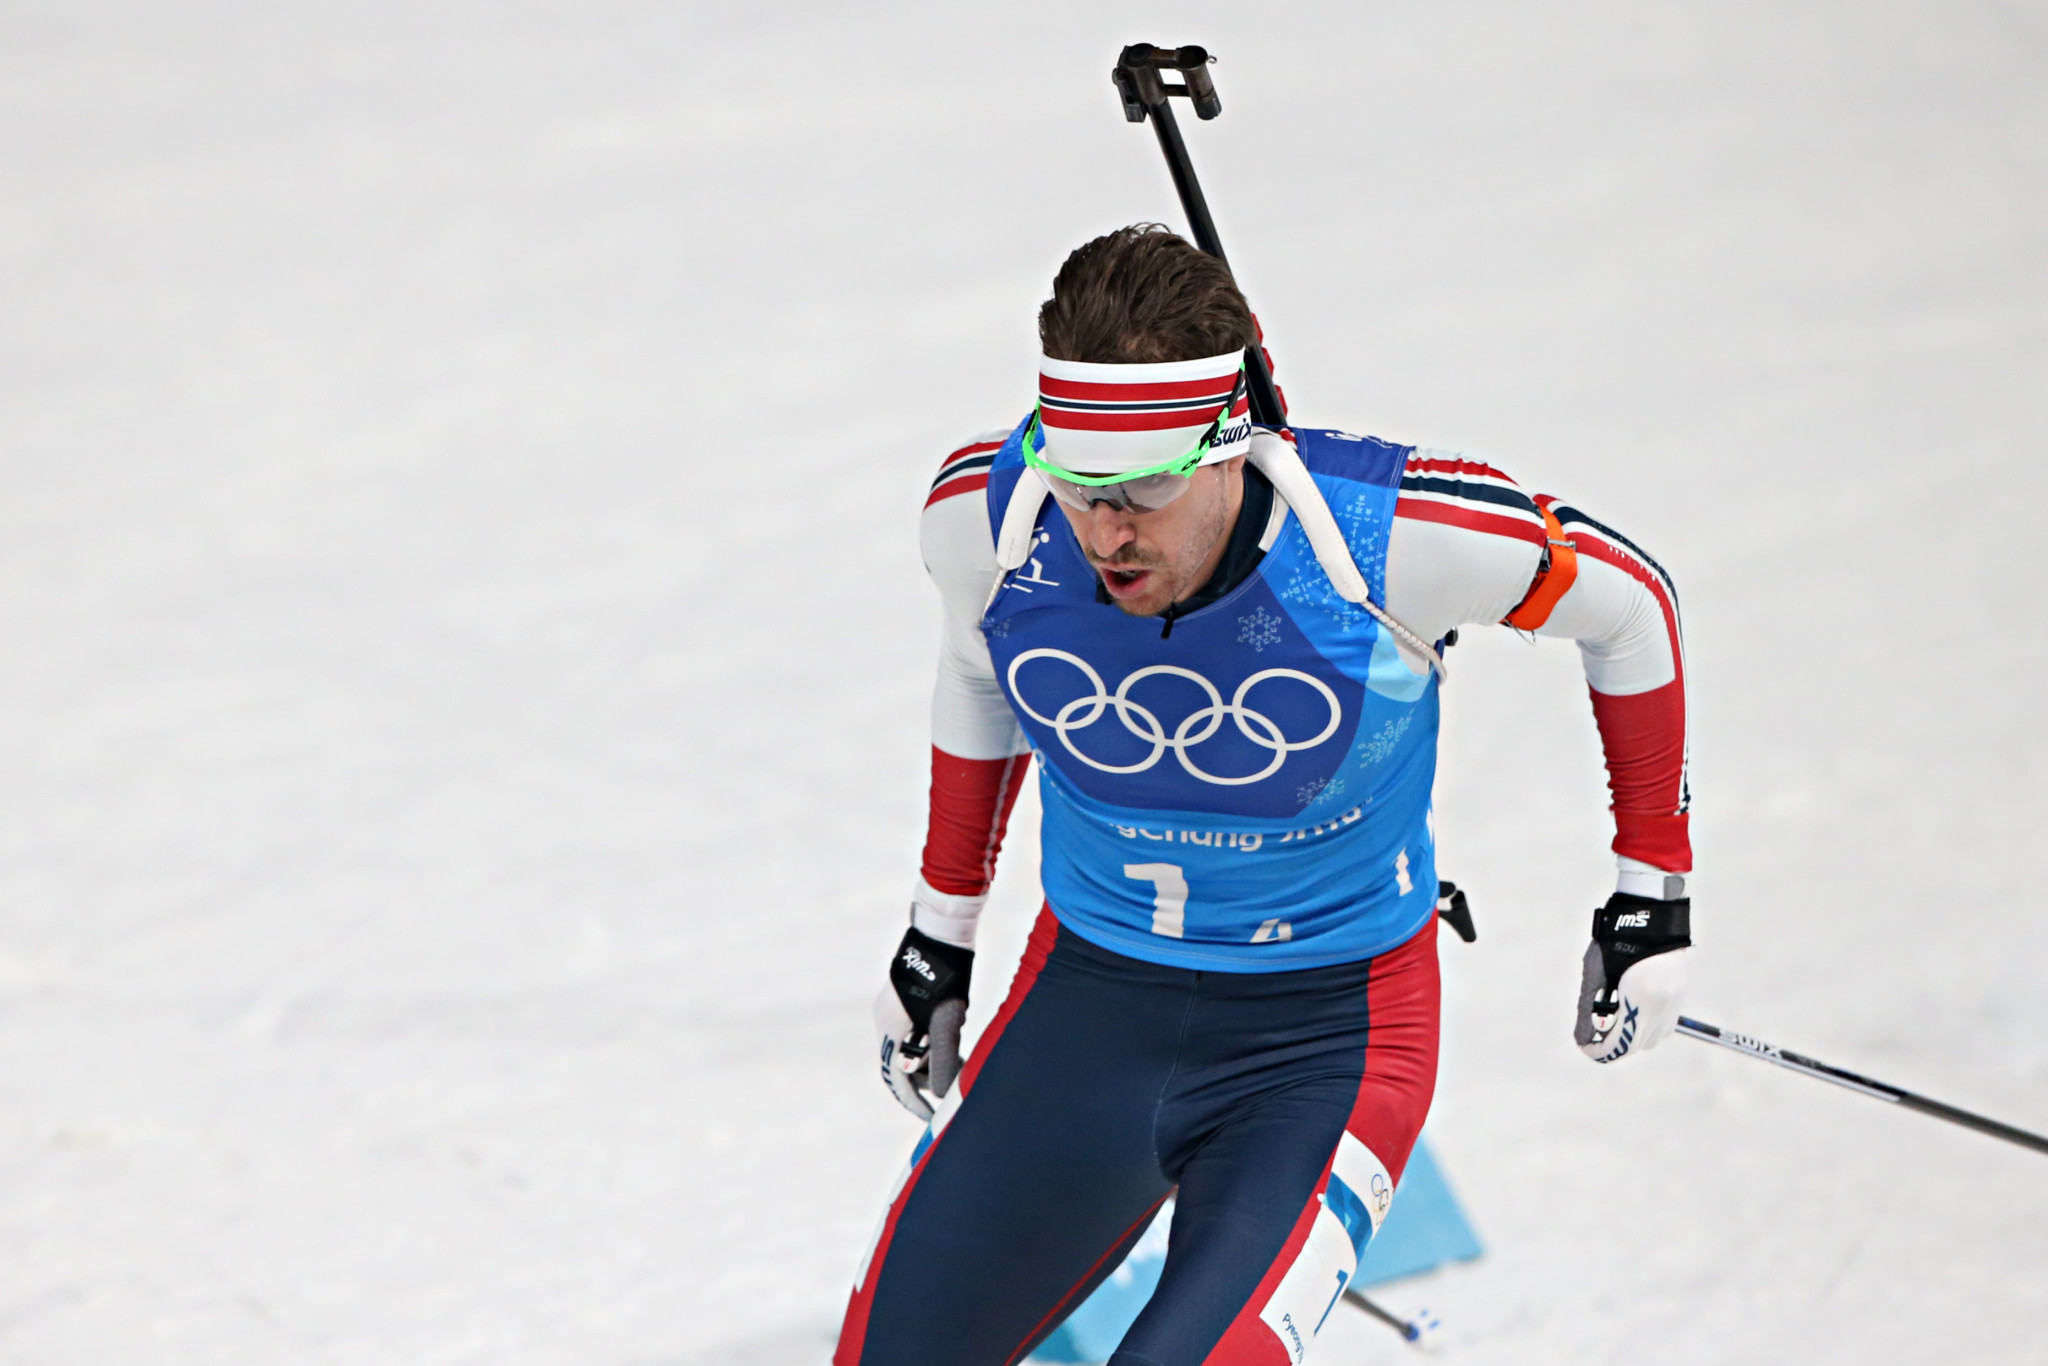 Emile Hegle Svendsen has retired from biathlon ©Getty Images